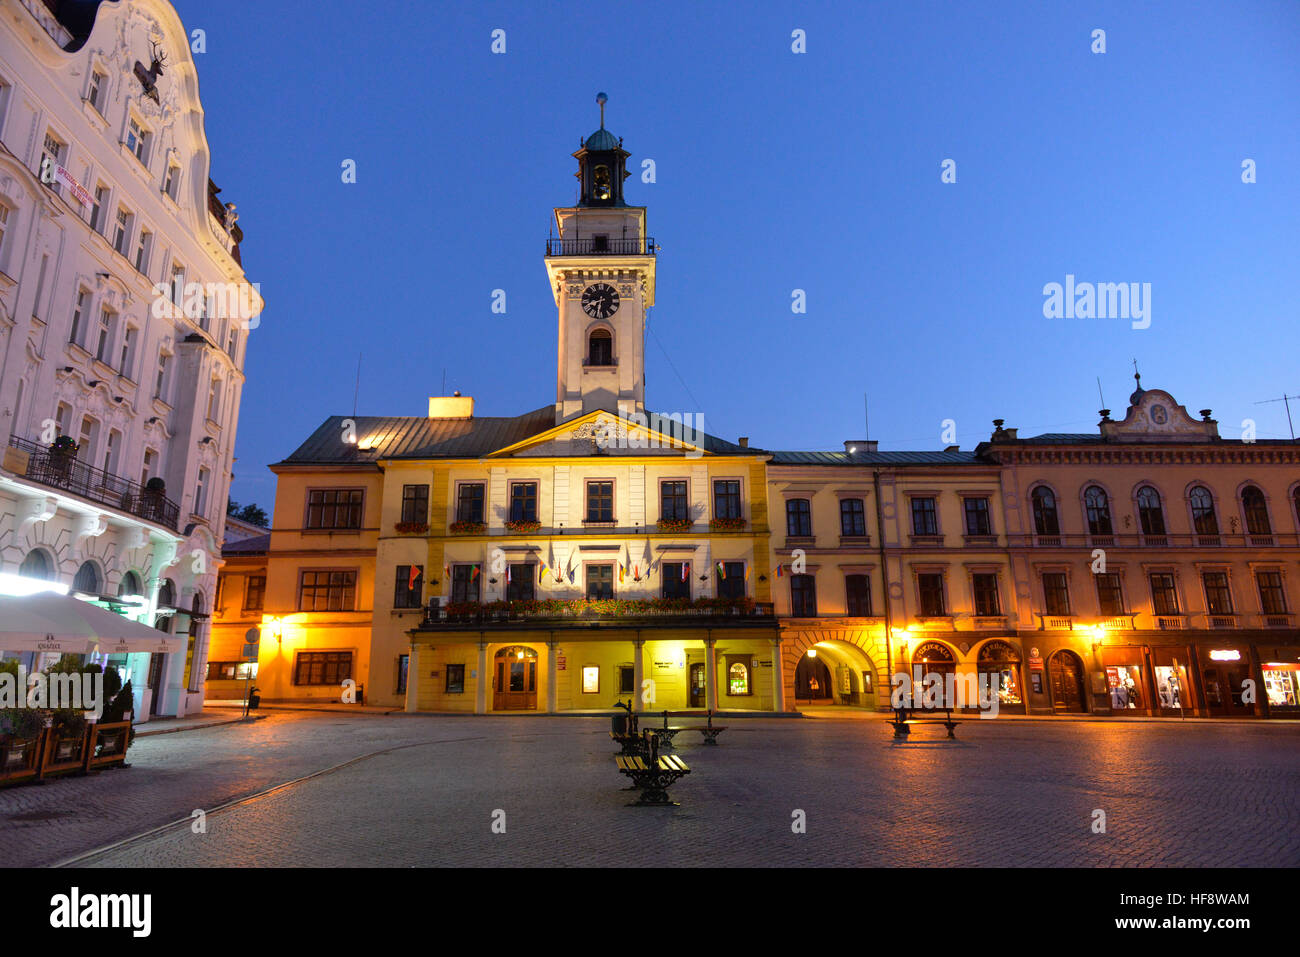 Rathaus, Marktplatz, Cieszyn, Polen, City hall, marketplace, Poland Stock Photo